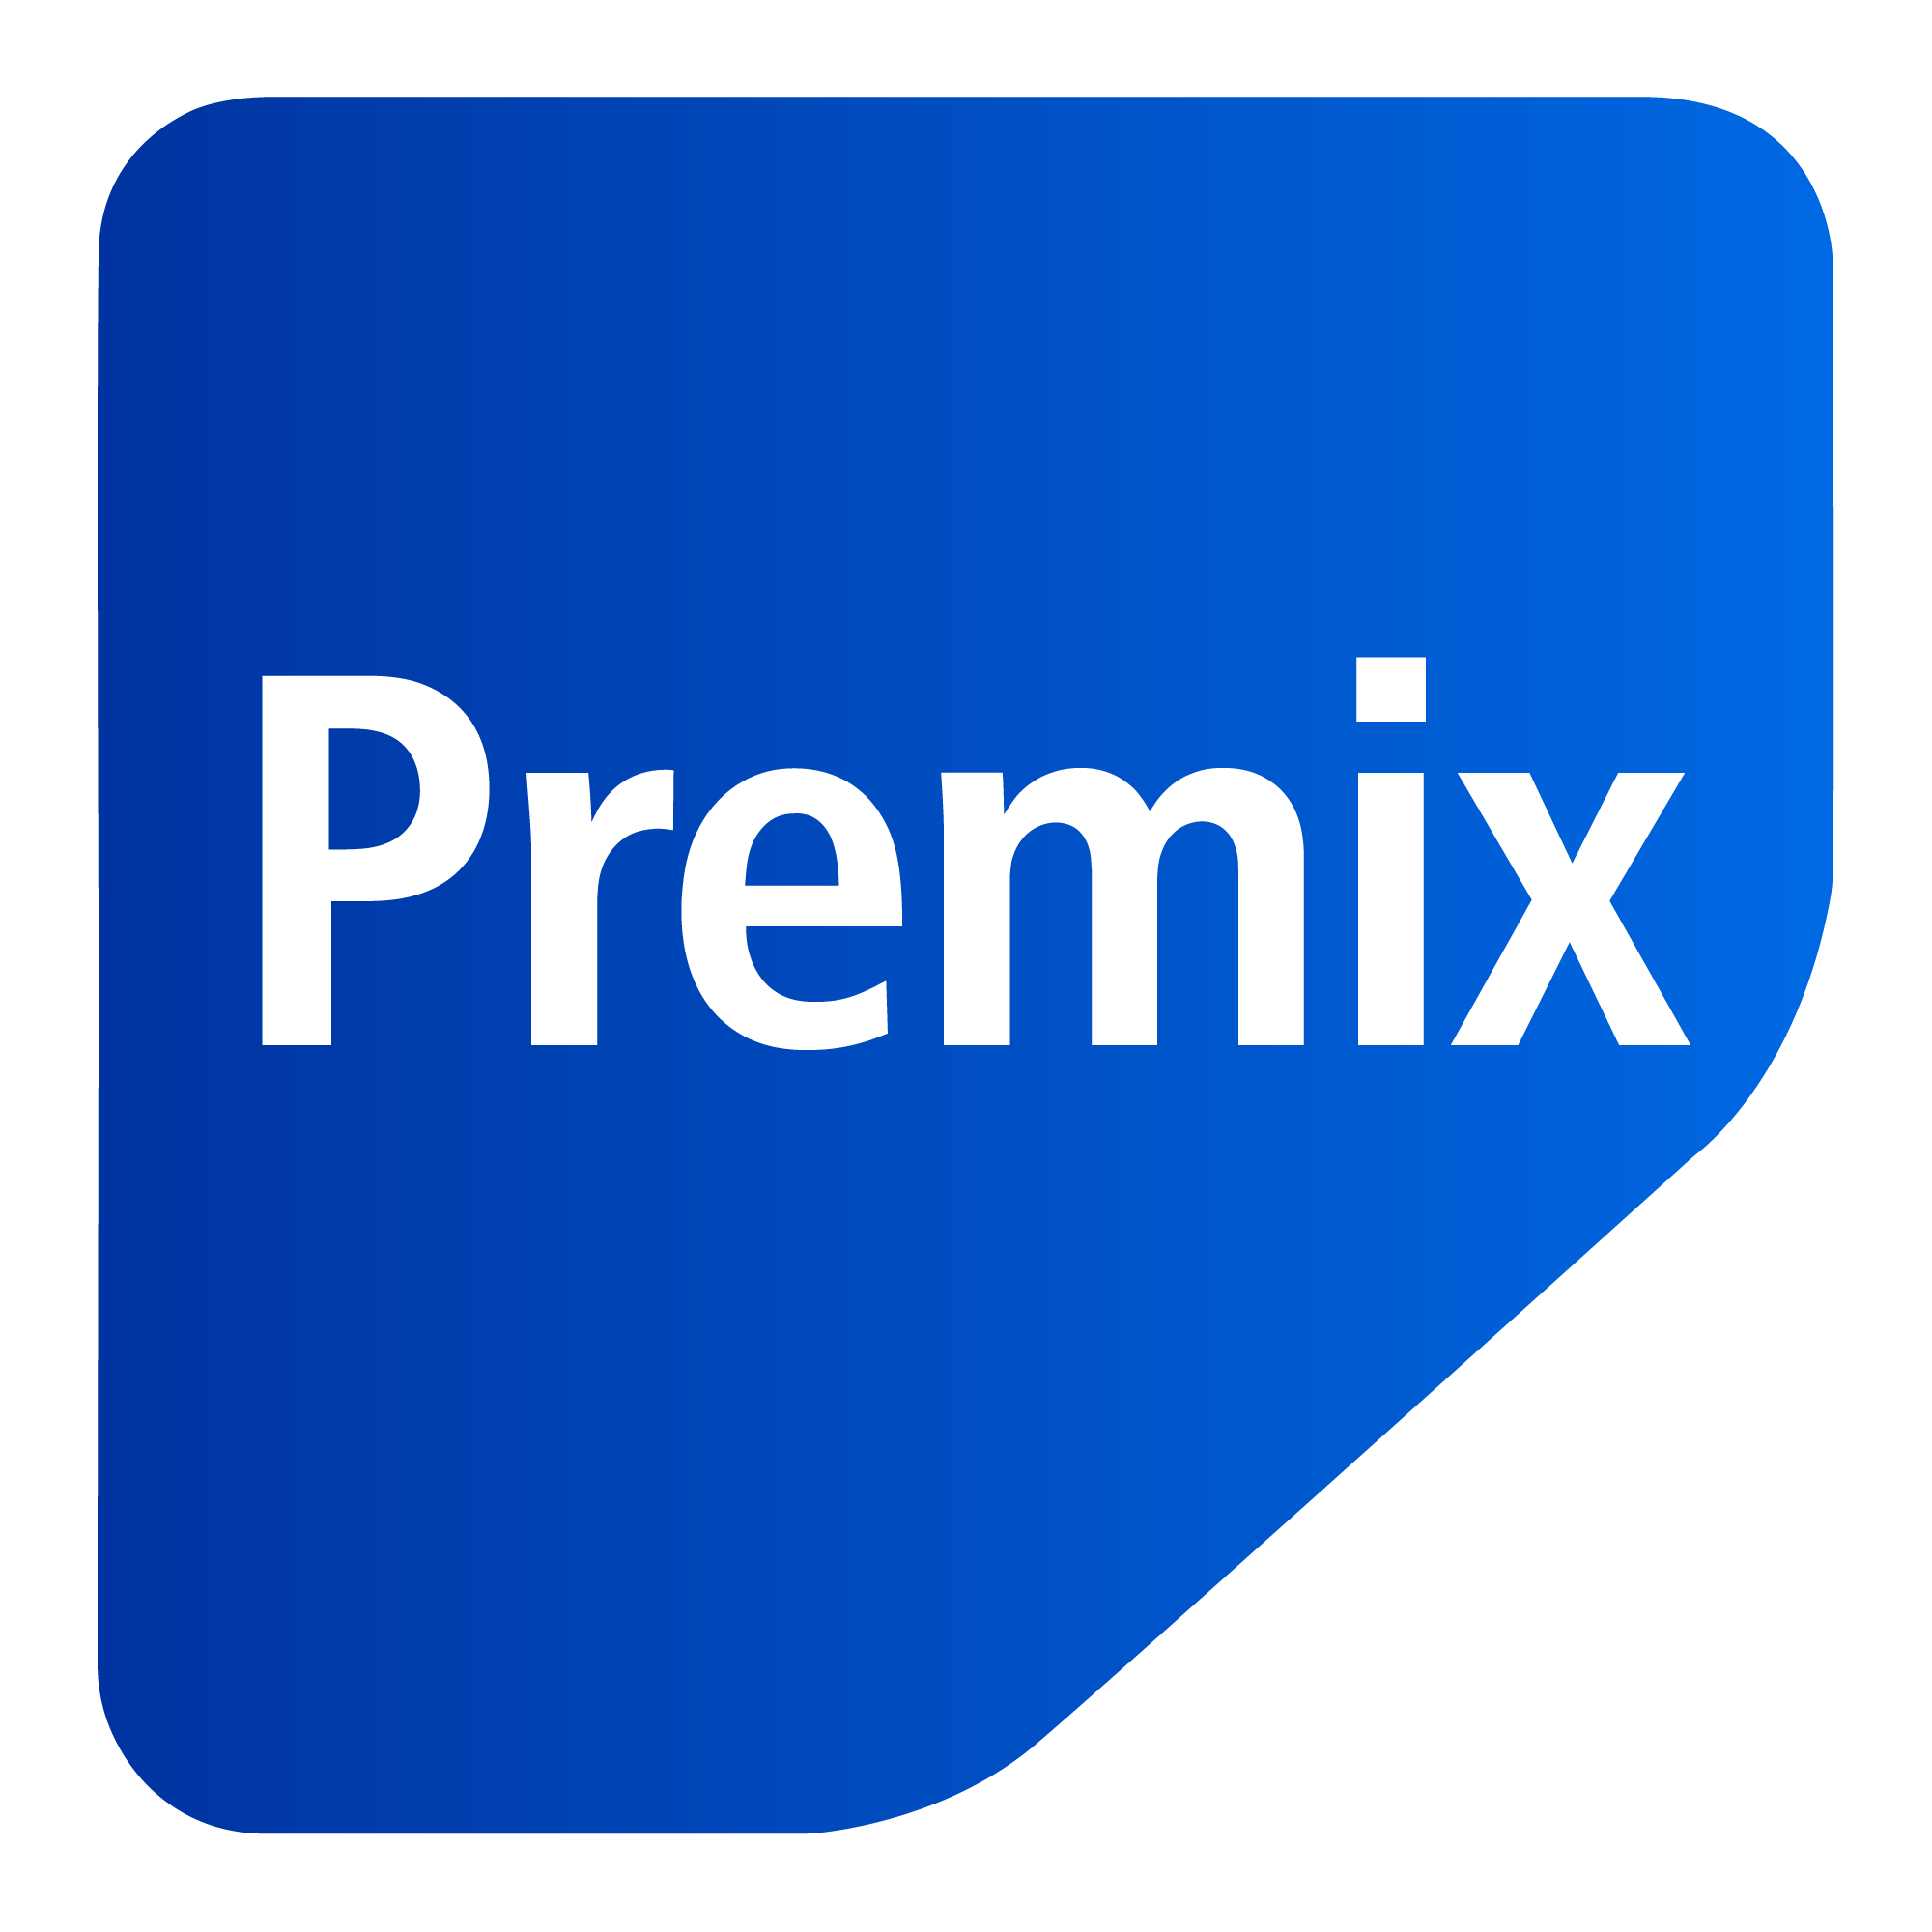 فهرست محصولات در گروه پرمیکس